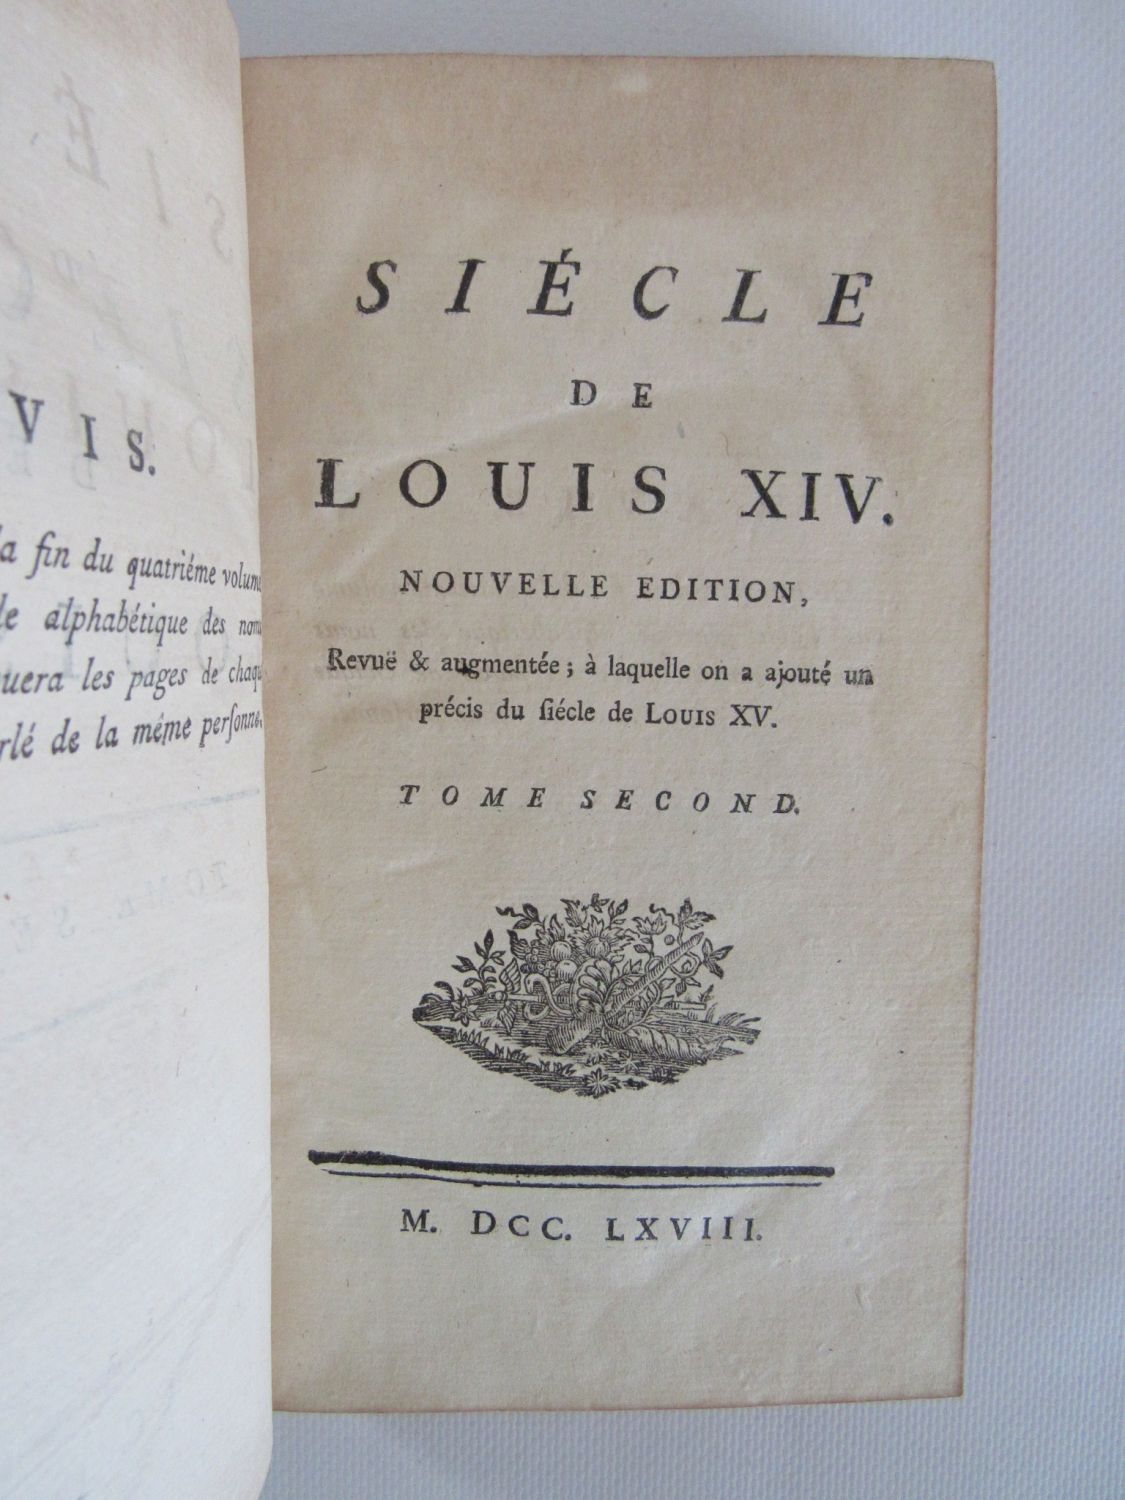 Œuvres de Voltaire Tome XX: Siècle de Louis XIV.—Tome II by Voltaire